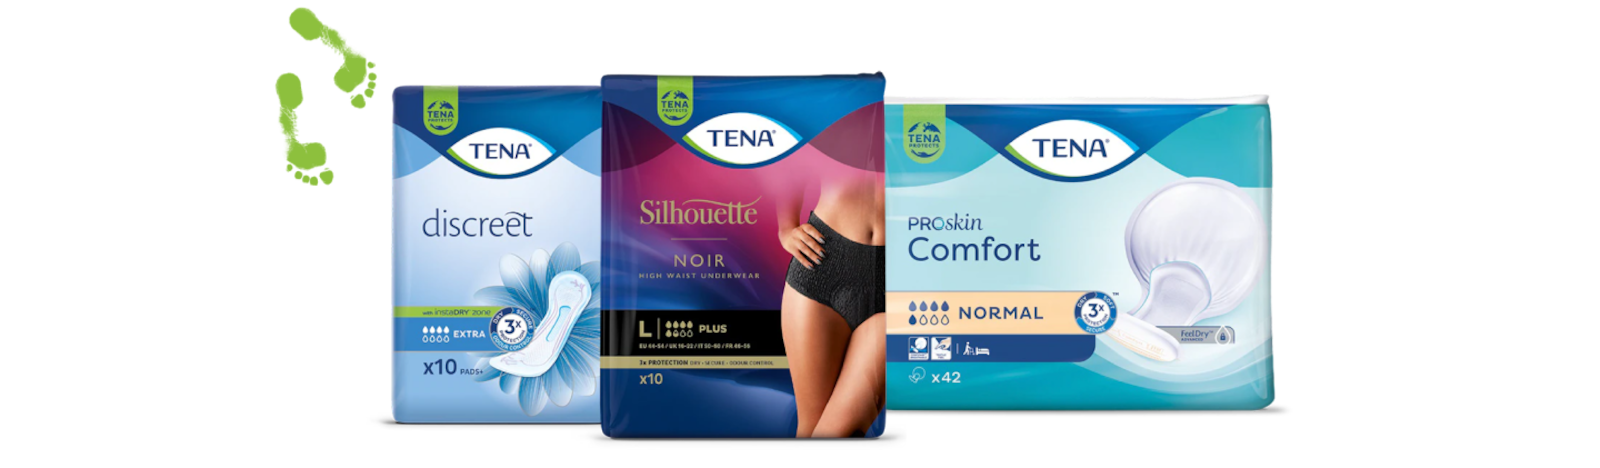 Förpackningsbilder av TENA Silhouette trosor, TENA Discreet binda och TENA ProSkin Comfort